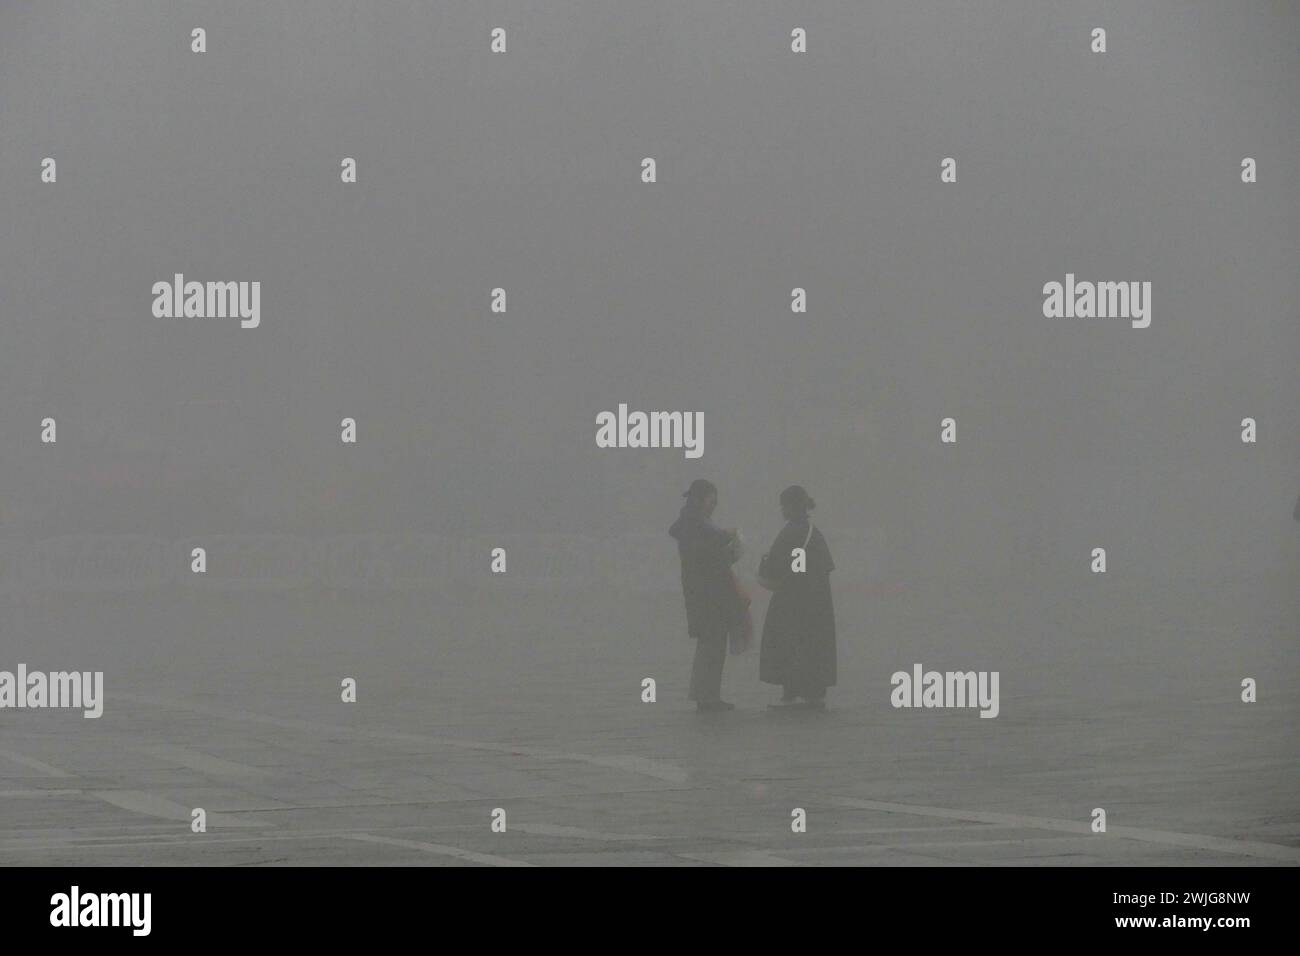 Venezia, Italia - 15 febbraio 2024: Una vista generale di Venezia avvolta dalla nebbia. La città della Serenissima si è svegliata in un'atmosfera magica. Marco secchi / Alamy Live News. Foto Stock